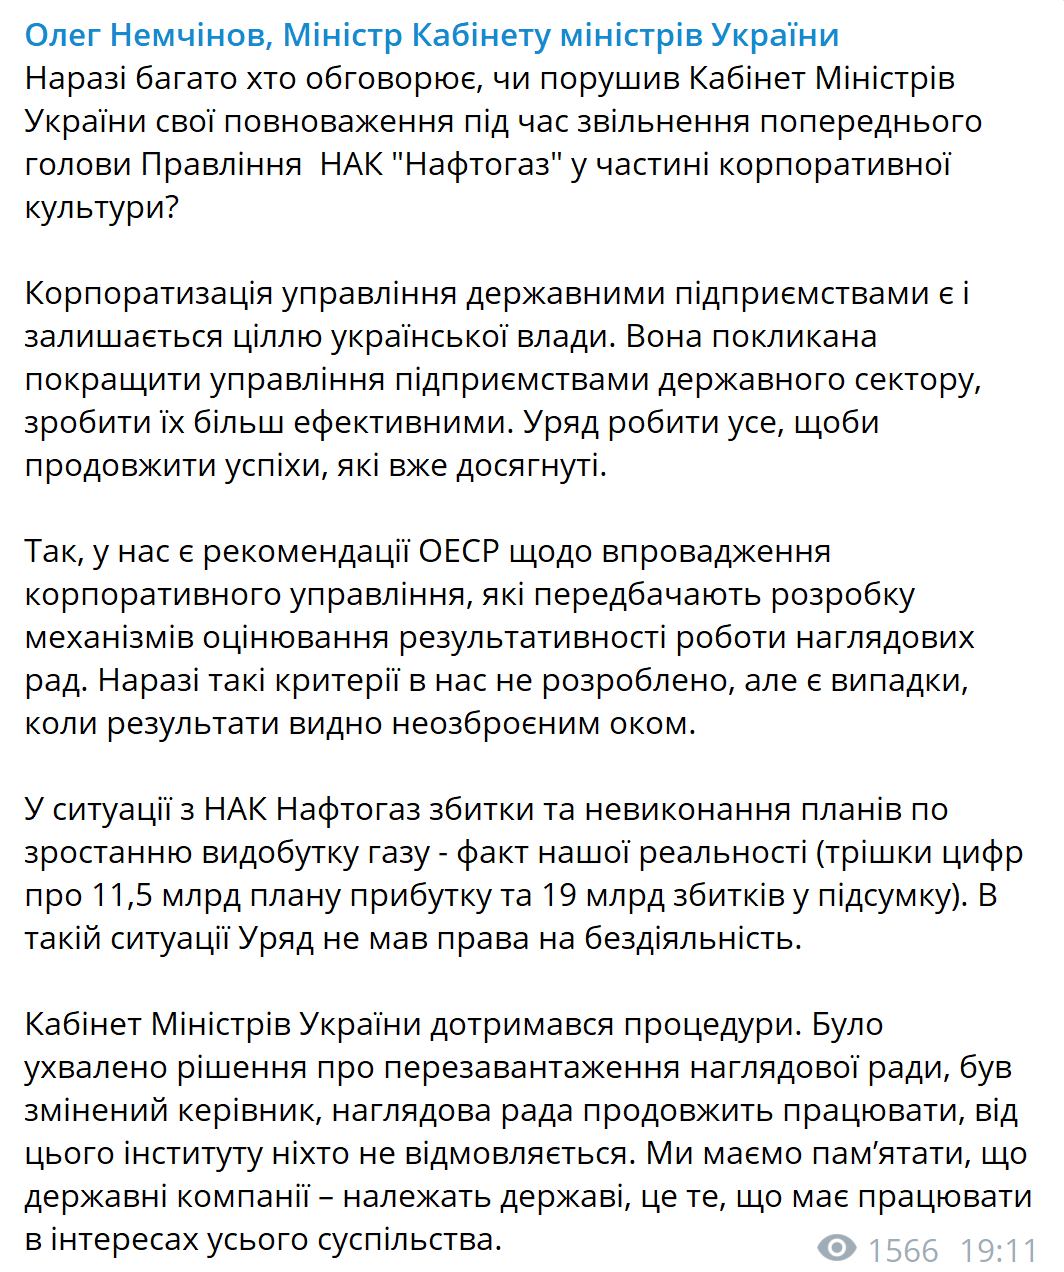 Немчінов пояснив, чому Кабмін звільнив Коболєва